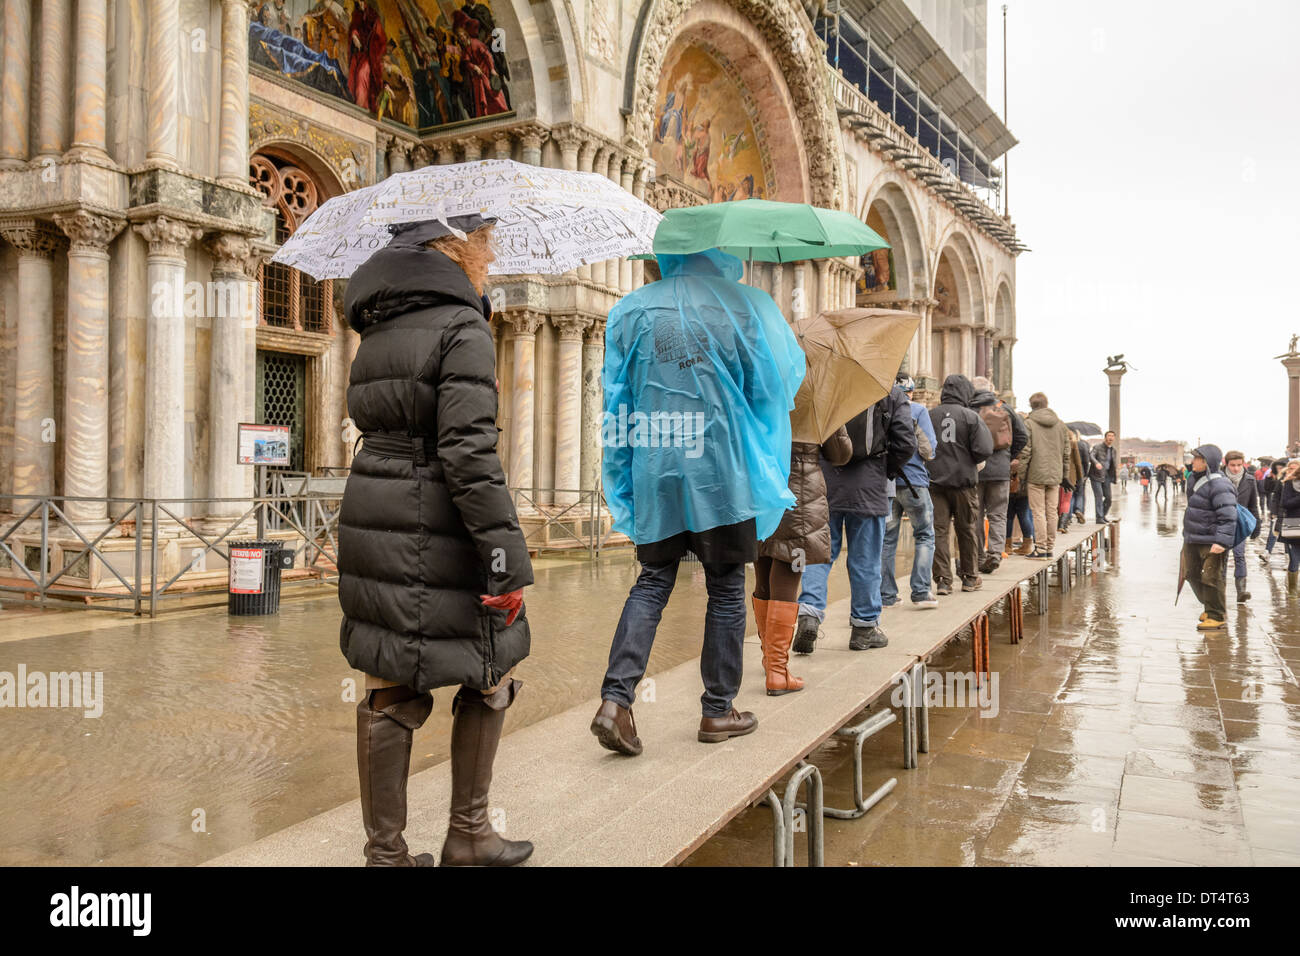 Venise, Italie. Les touristes sur l'acqua alta (marée haute) l'intercirculation queuing pour entrer dans la basilique San Marco. Banque D'Images